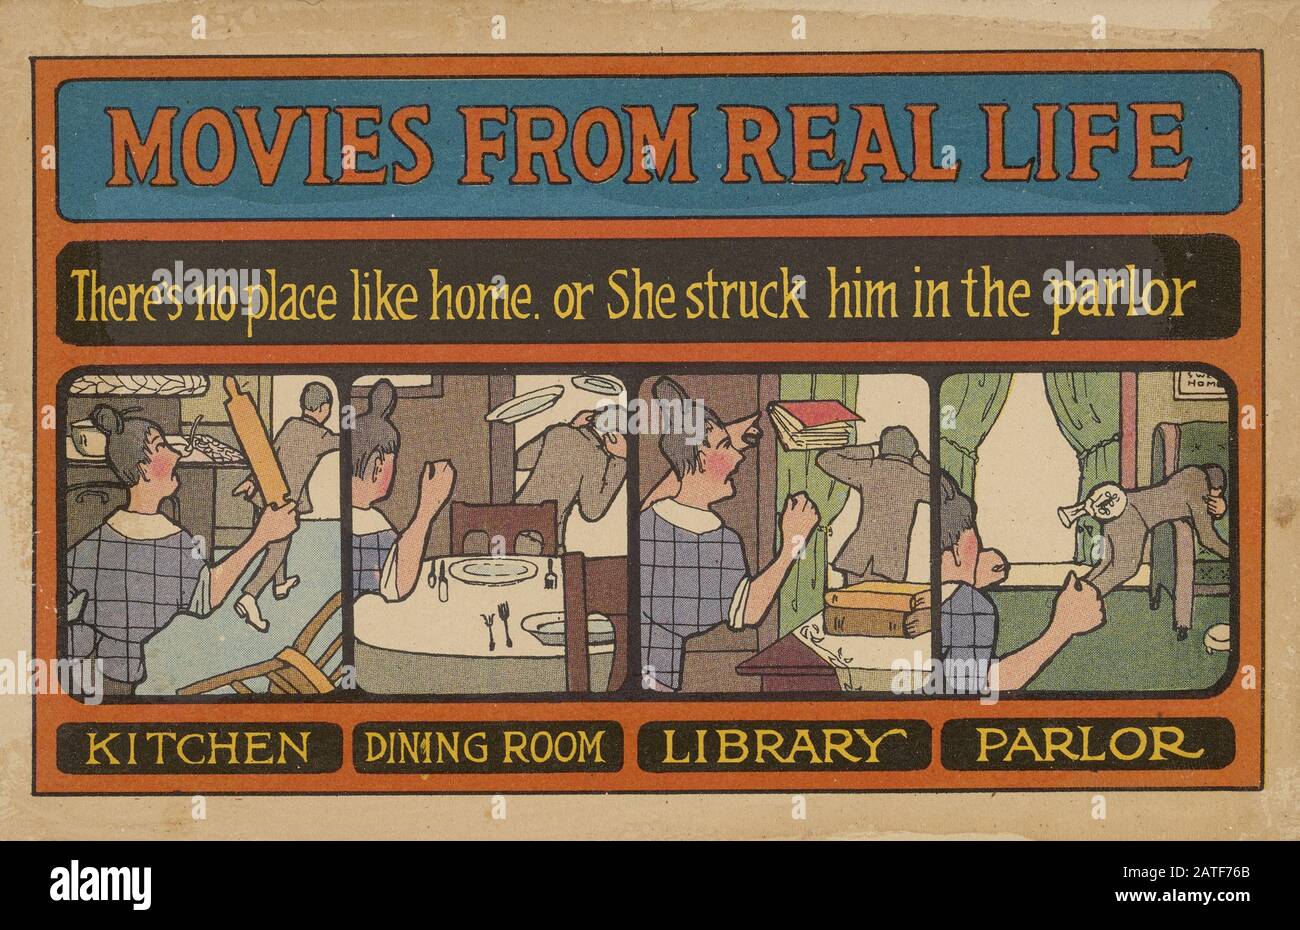 Filme aus Dem Wirklichen Leben - Frauenwahlrecht in den Vereinigten Staaten von Amerika, den Jahren um 1920' - Antiwahlpropaganda Stockfoto